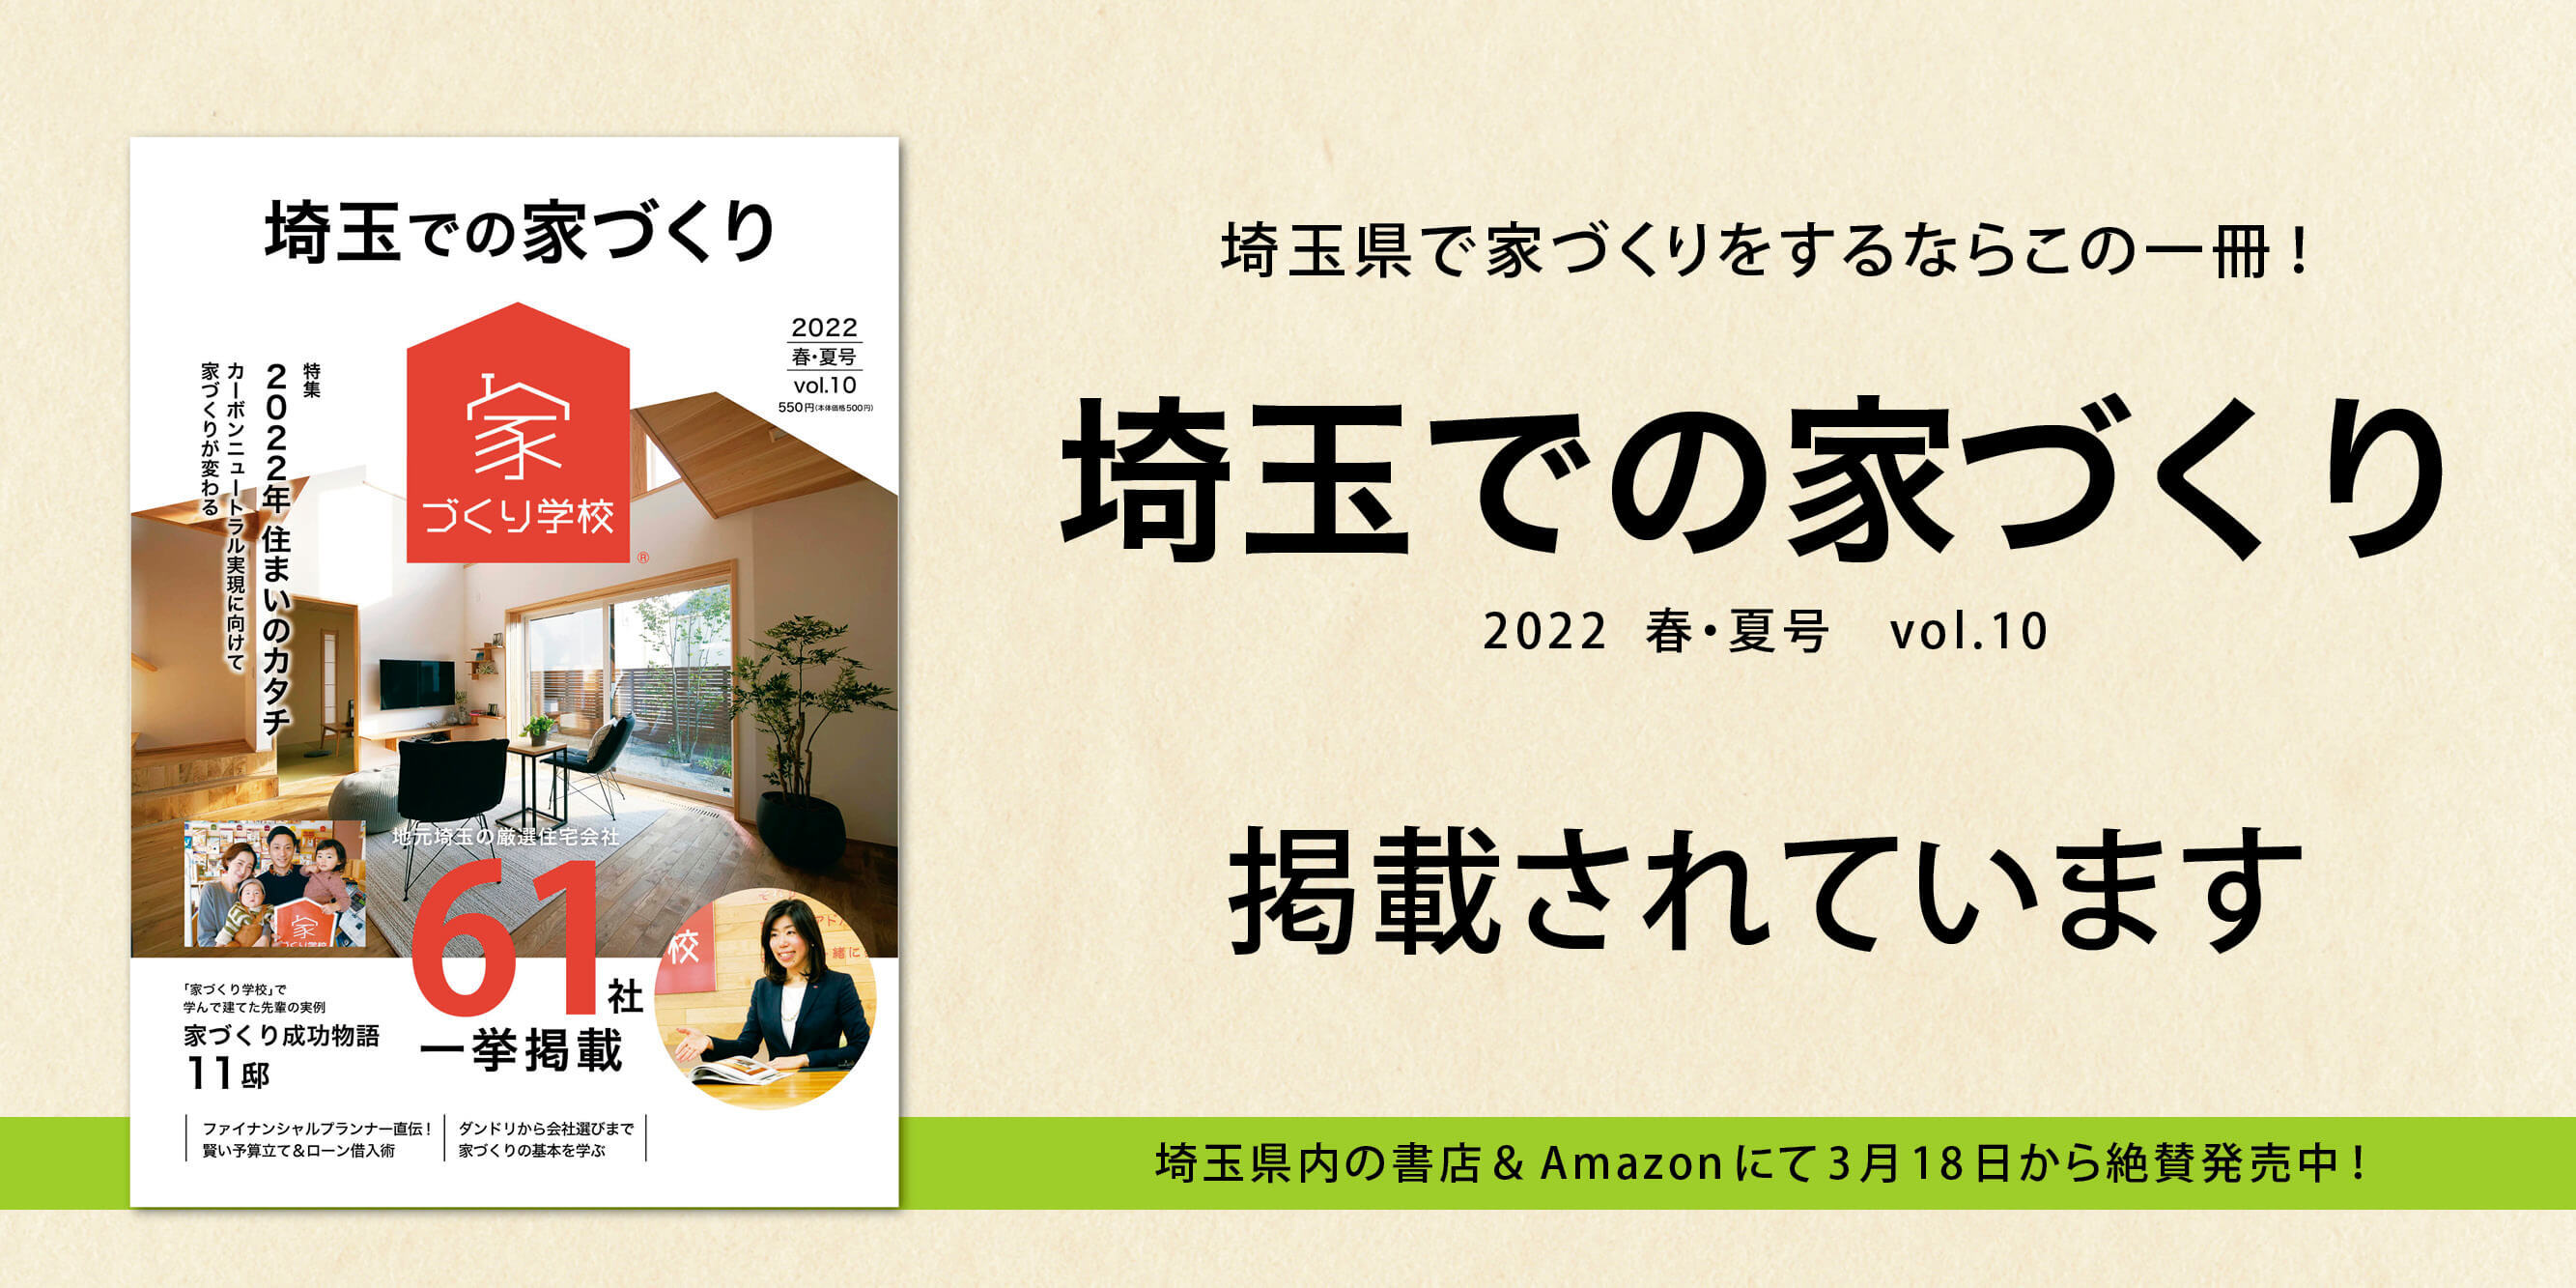 「埼玉での家づくりVol.10」に当社の施工例が掲載されています。